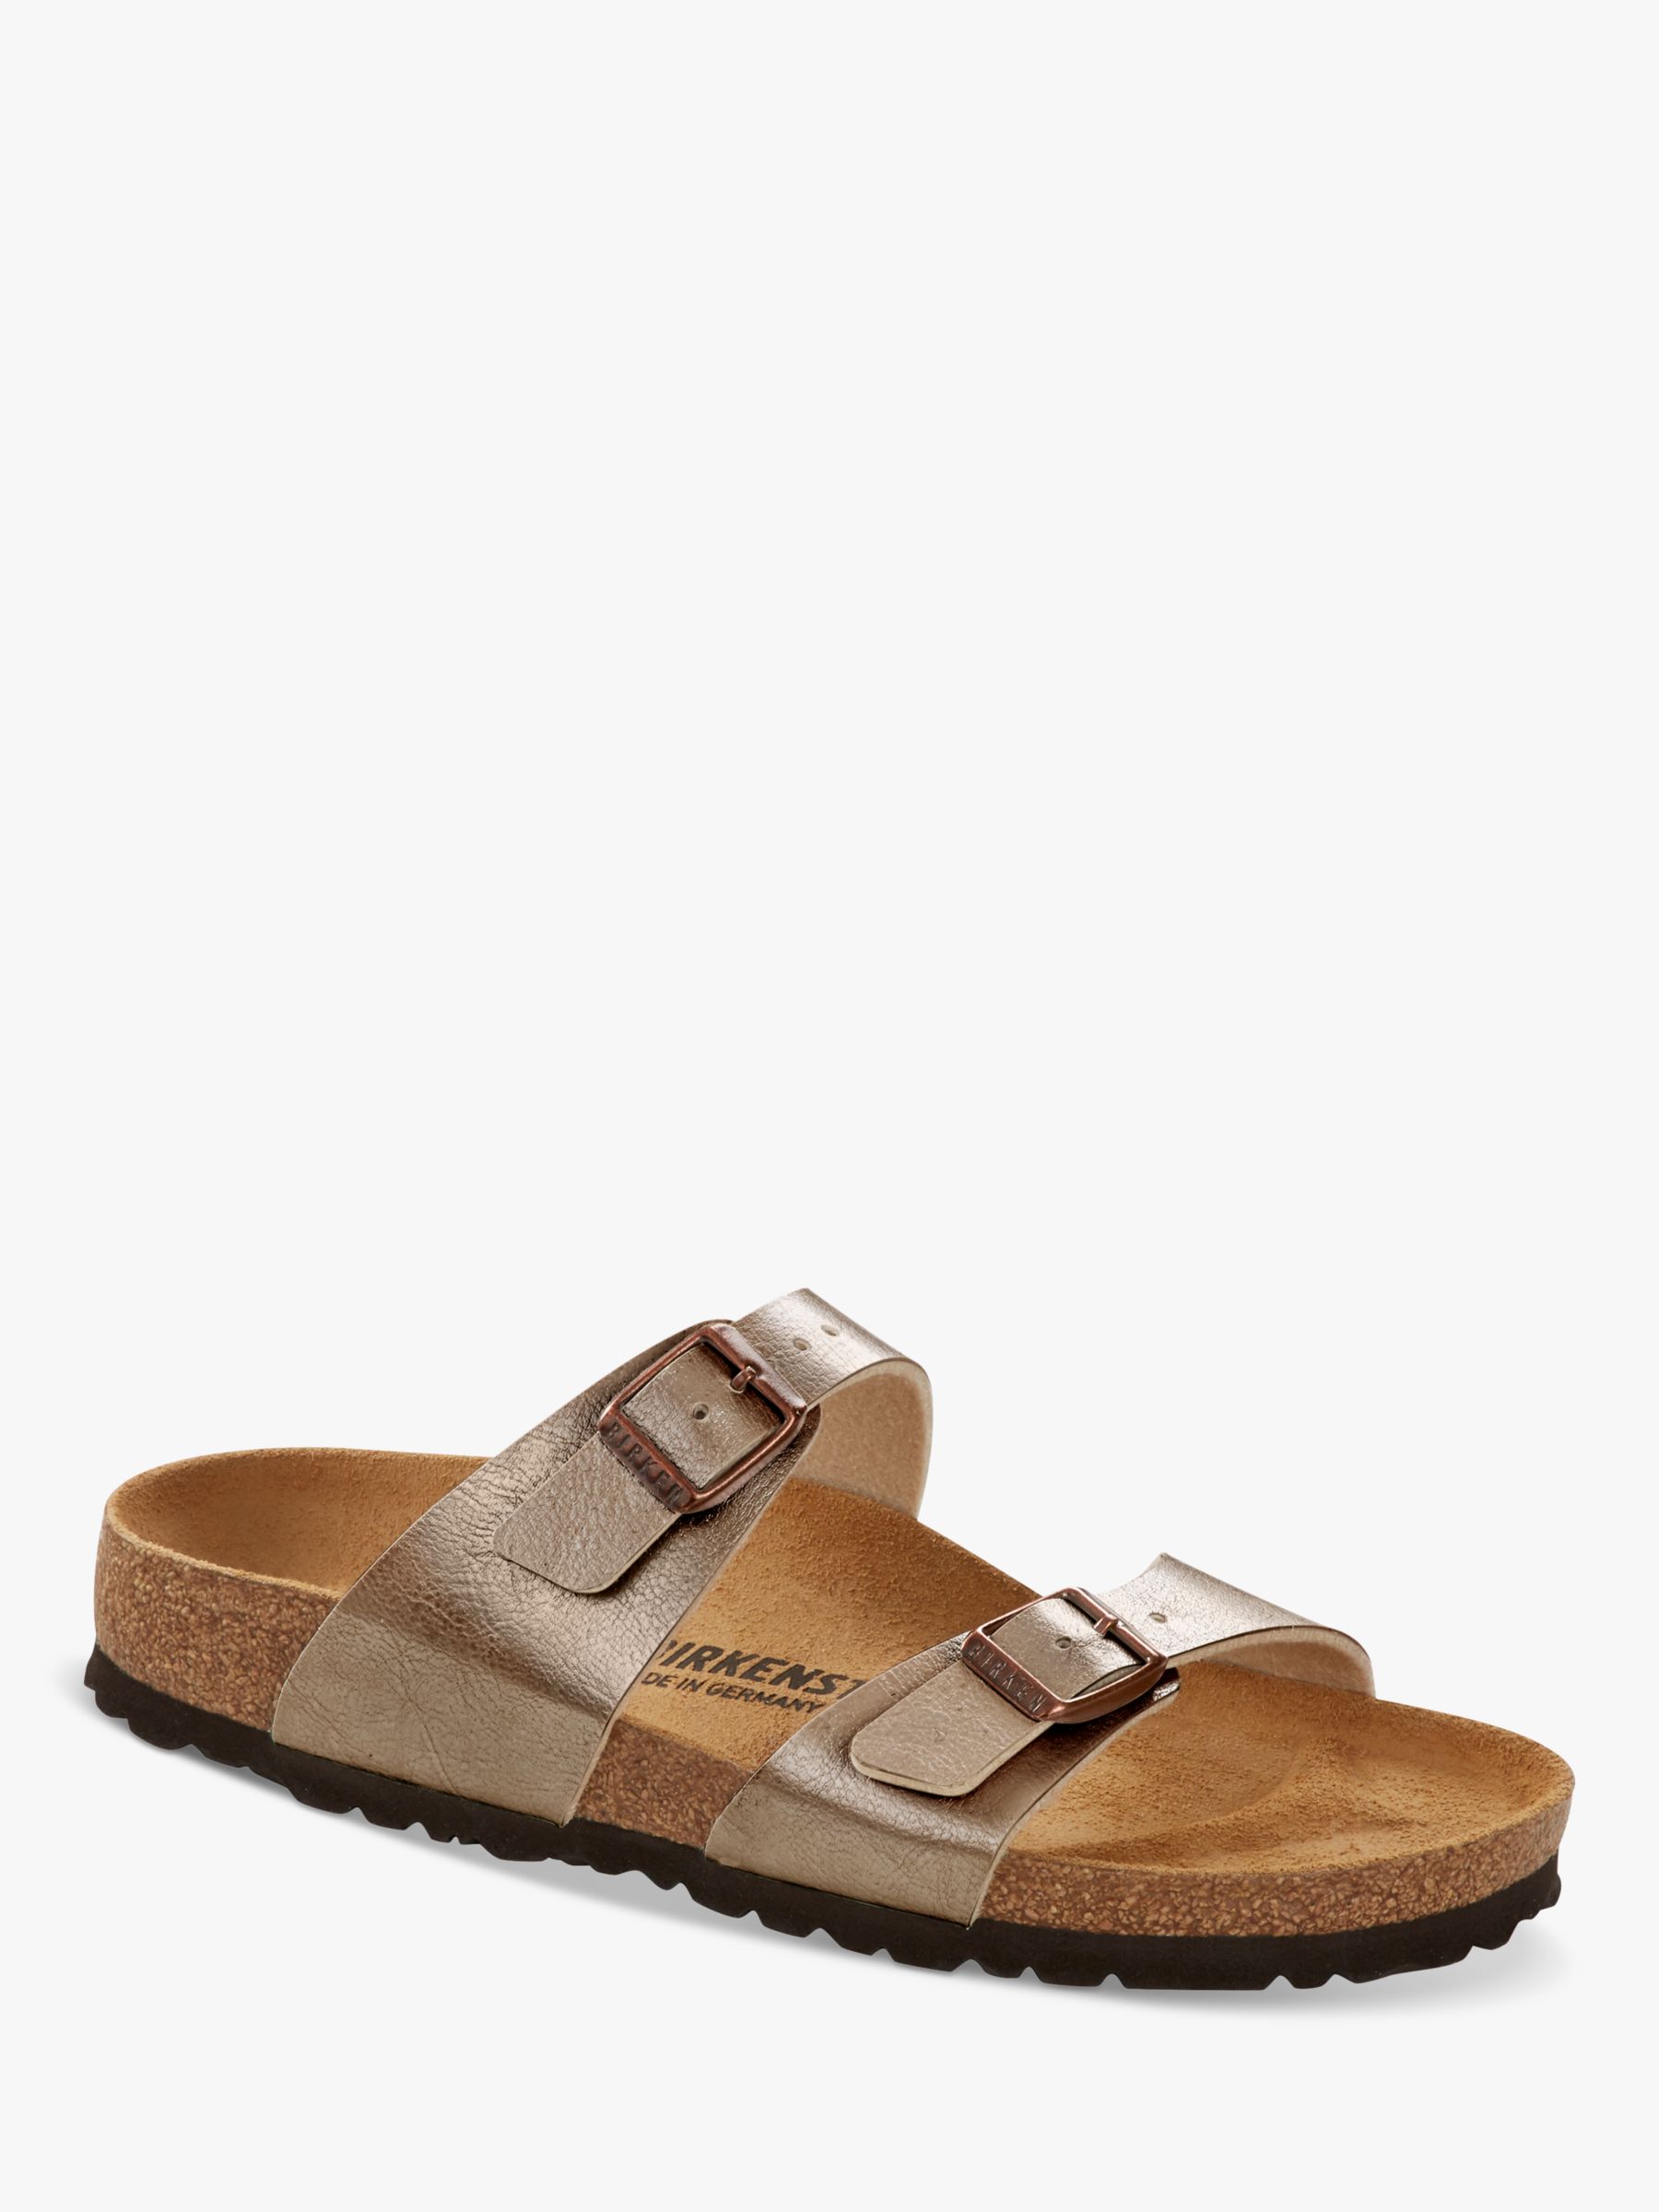 Birkenstock Sydney Regular Fit Graceful Sandals, Taupe, 38